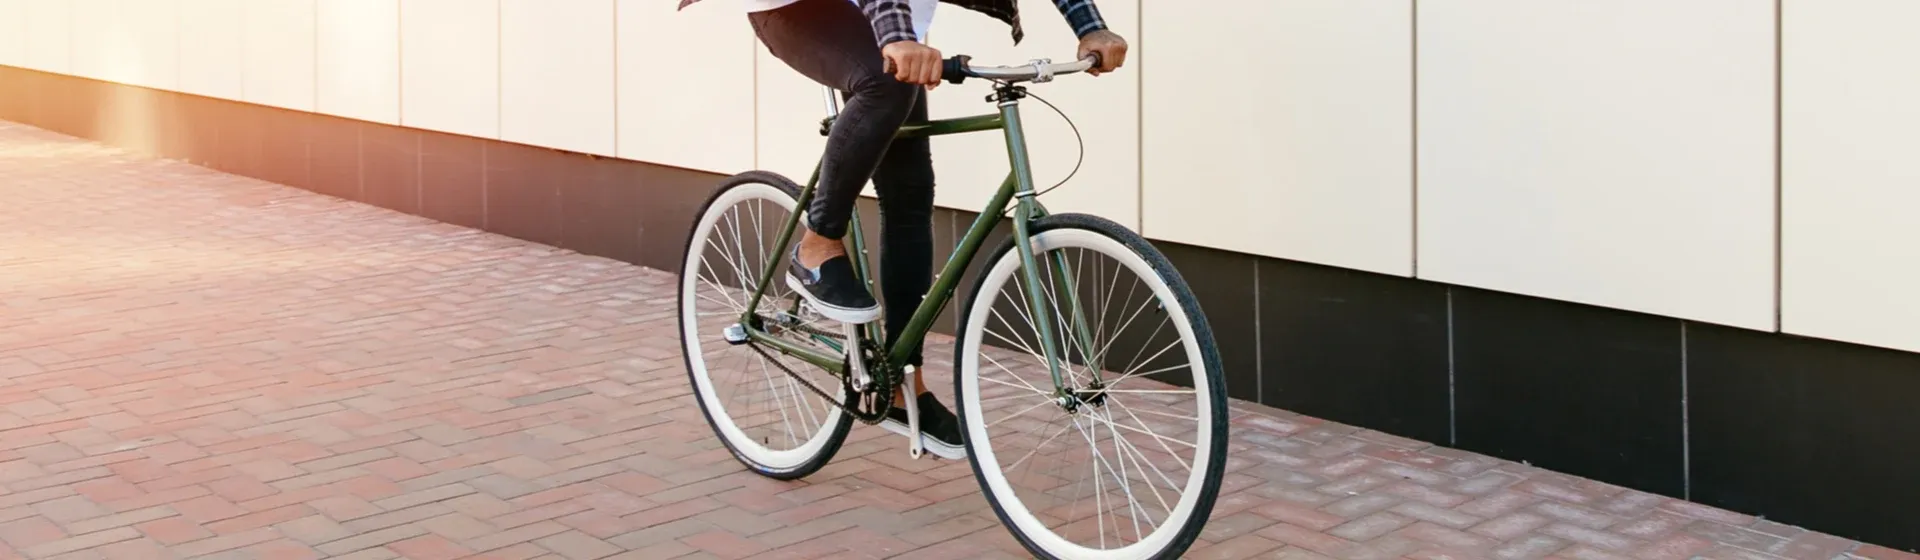 Bicicleta Houston: 7 melhores opções para pedalar com conforto